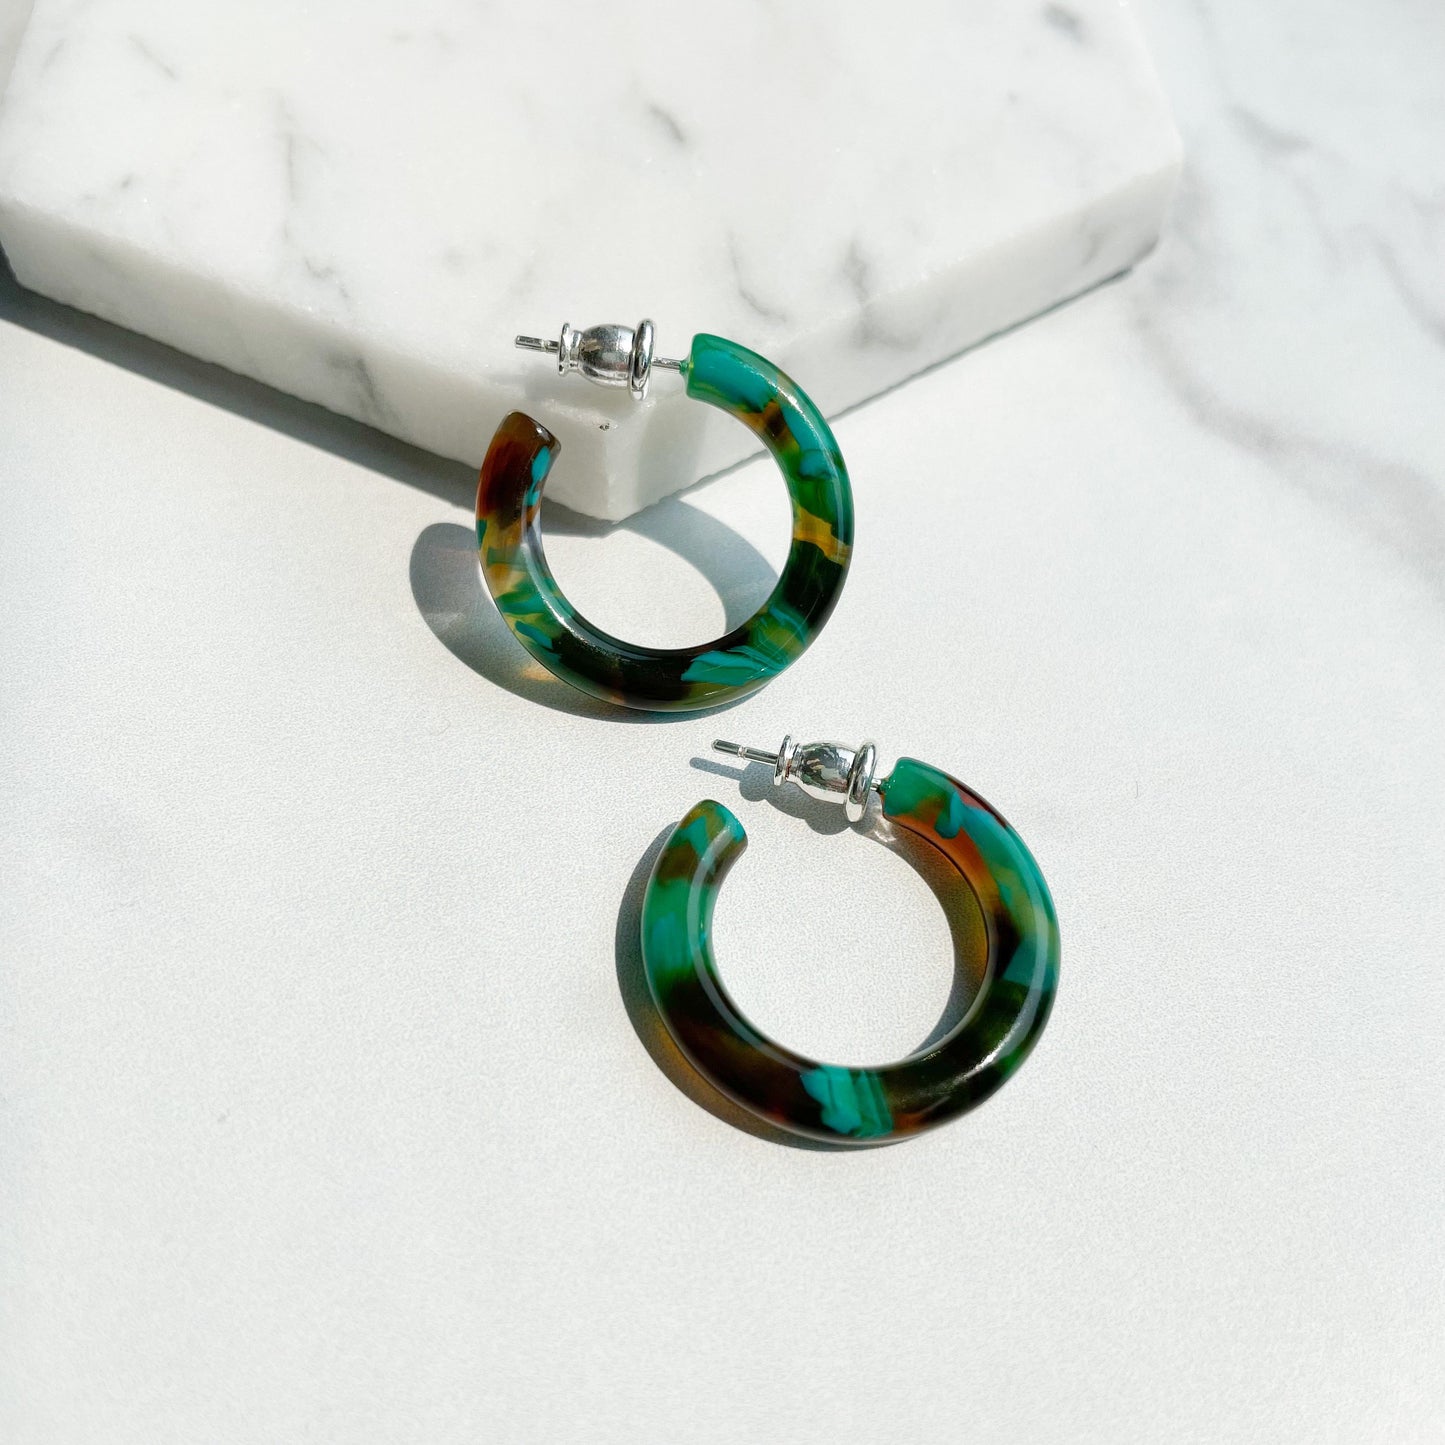 Ultra Mini Hoops in Spanish Moon | Green and Brown Pearl Hoop Earrings 925 Sterling Silver Posts